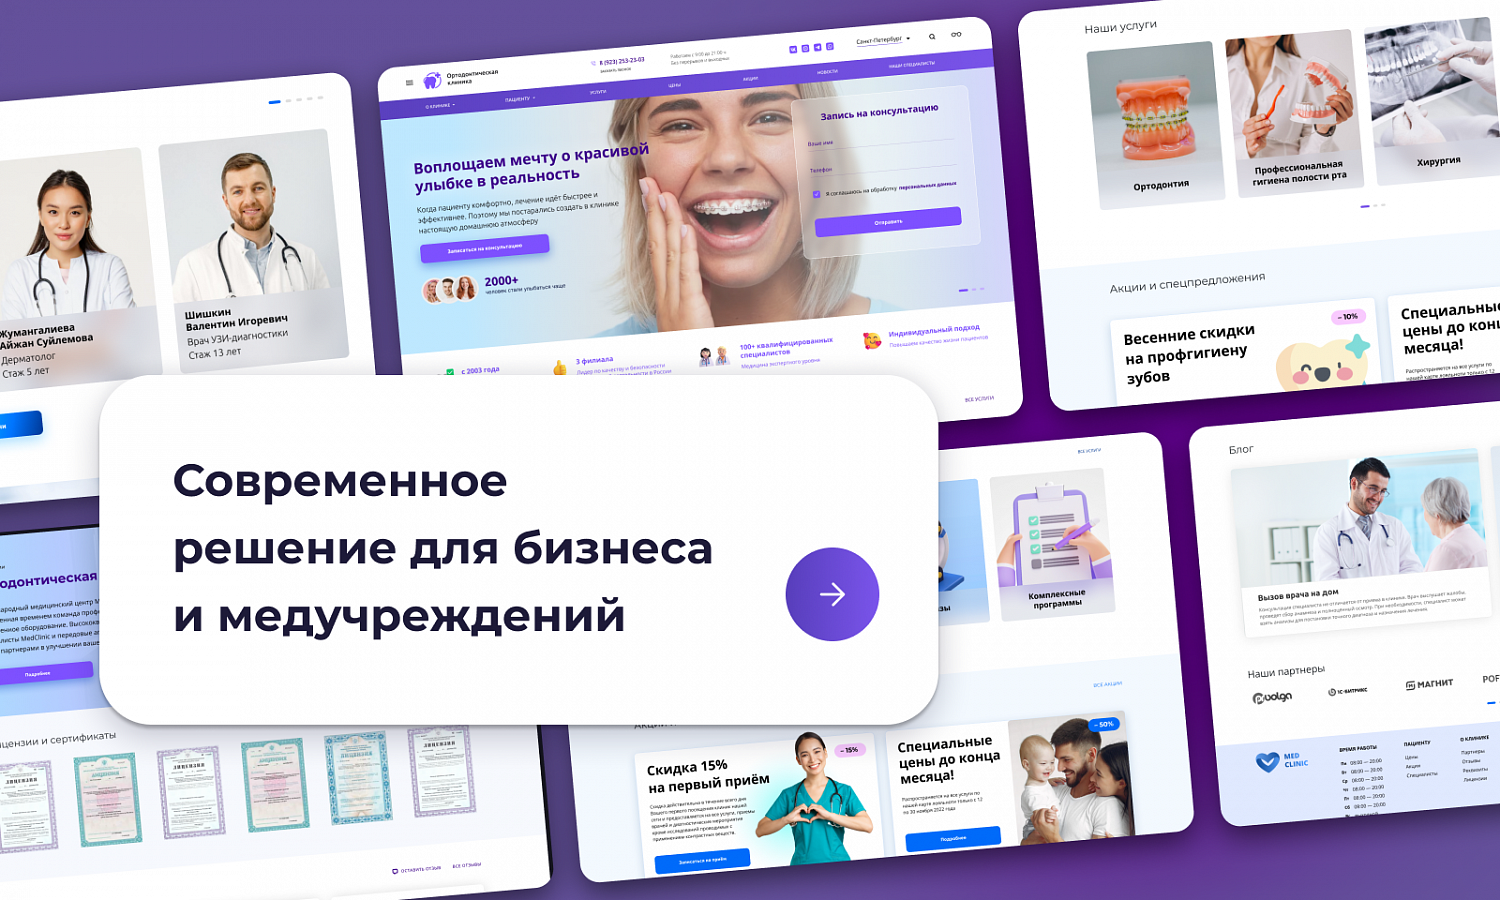 PR-Volga: Ортодонтия. Готовый корпоративный сайт стоматологической клиники